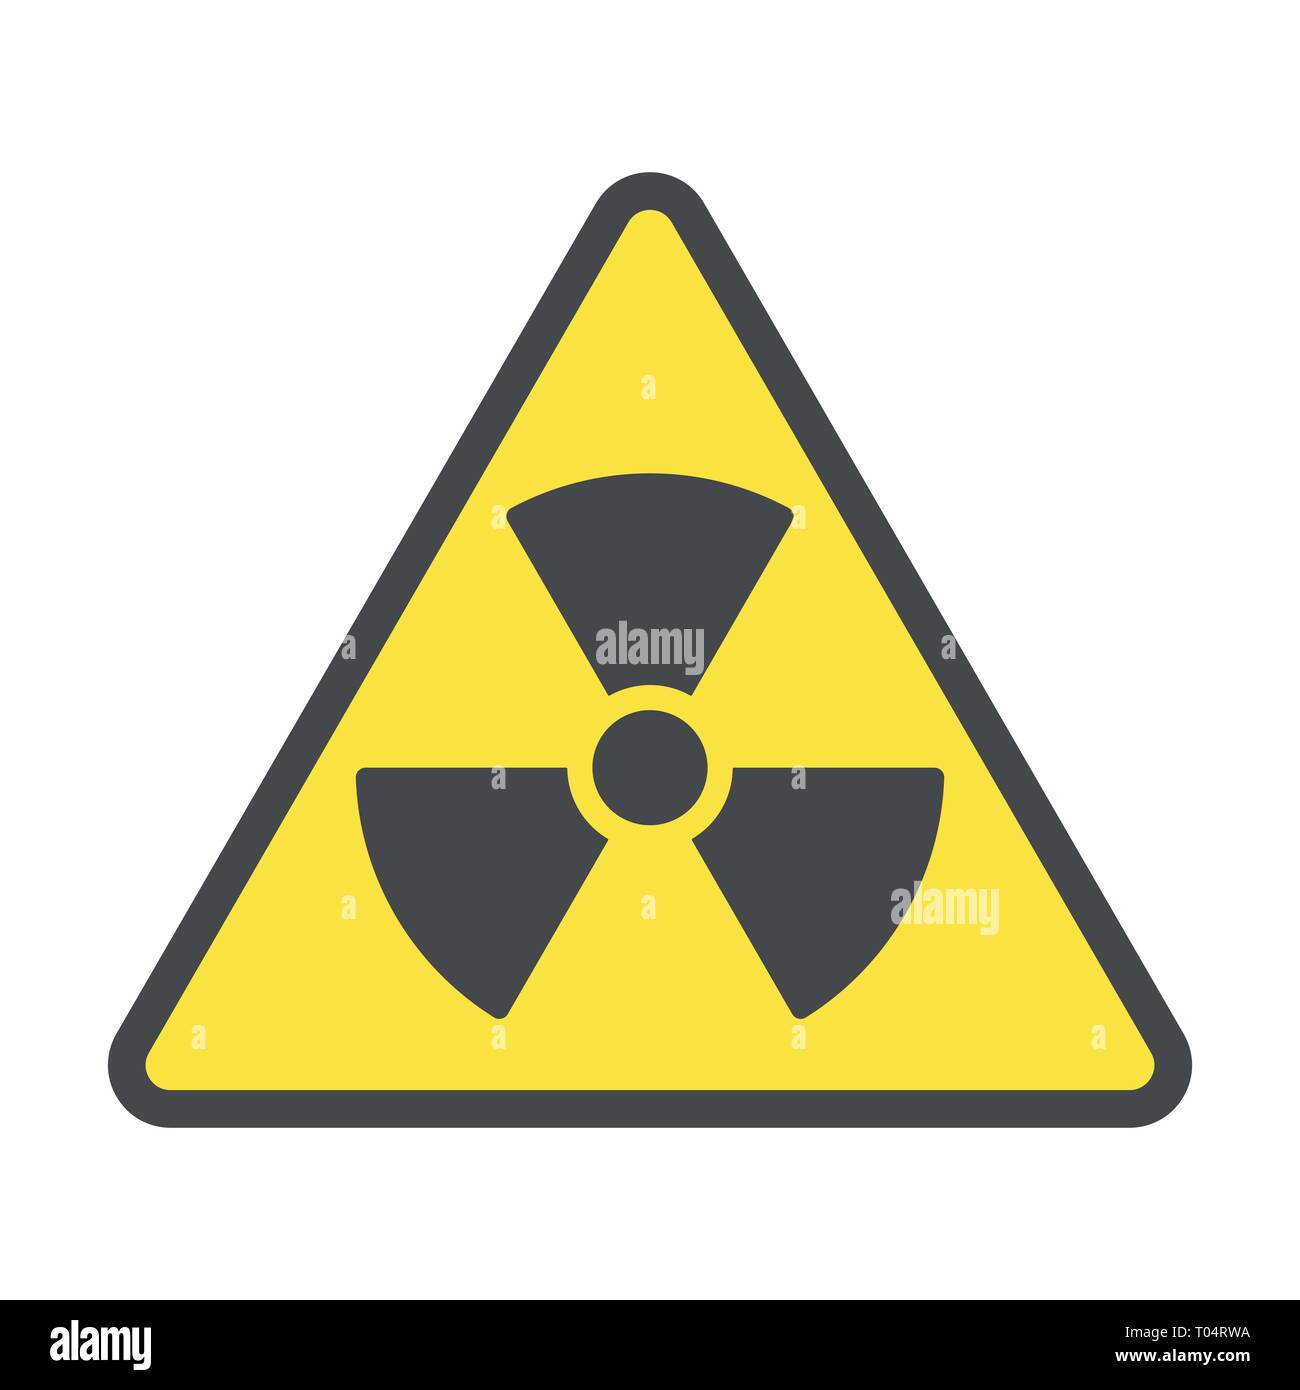 Radioaktive Zone, Vektor Zeichen oder Symbol. Warnung radioaktive Zone in Dreieck Symbol auf gelbem Hintergrund mit Streifen getrennt. Radioaktivität Stock Vektor